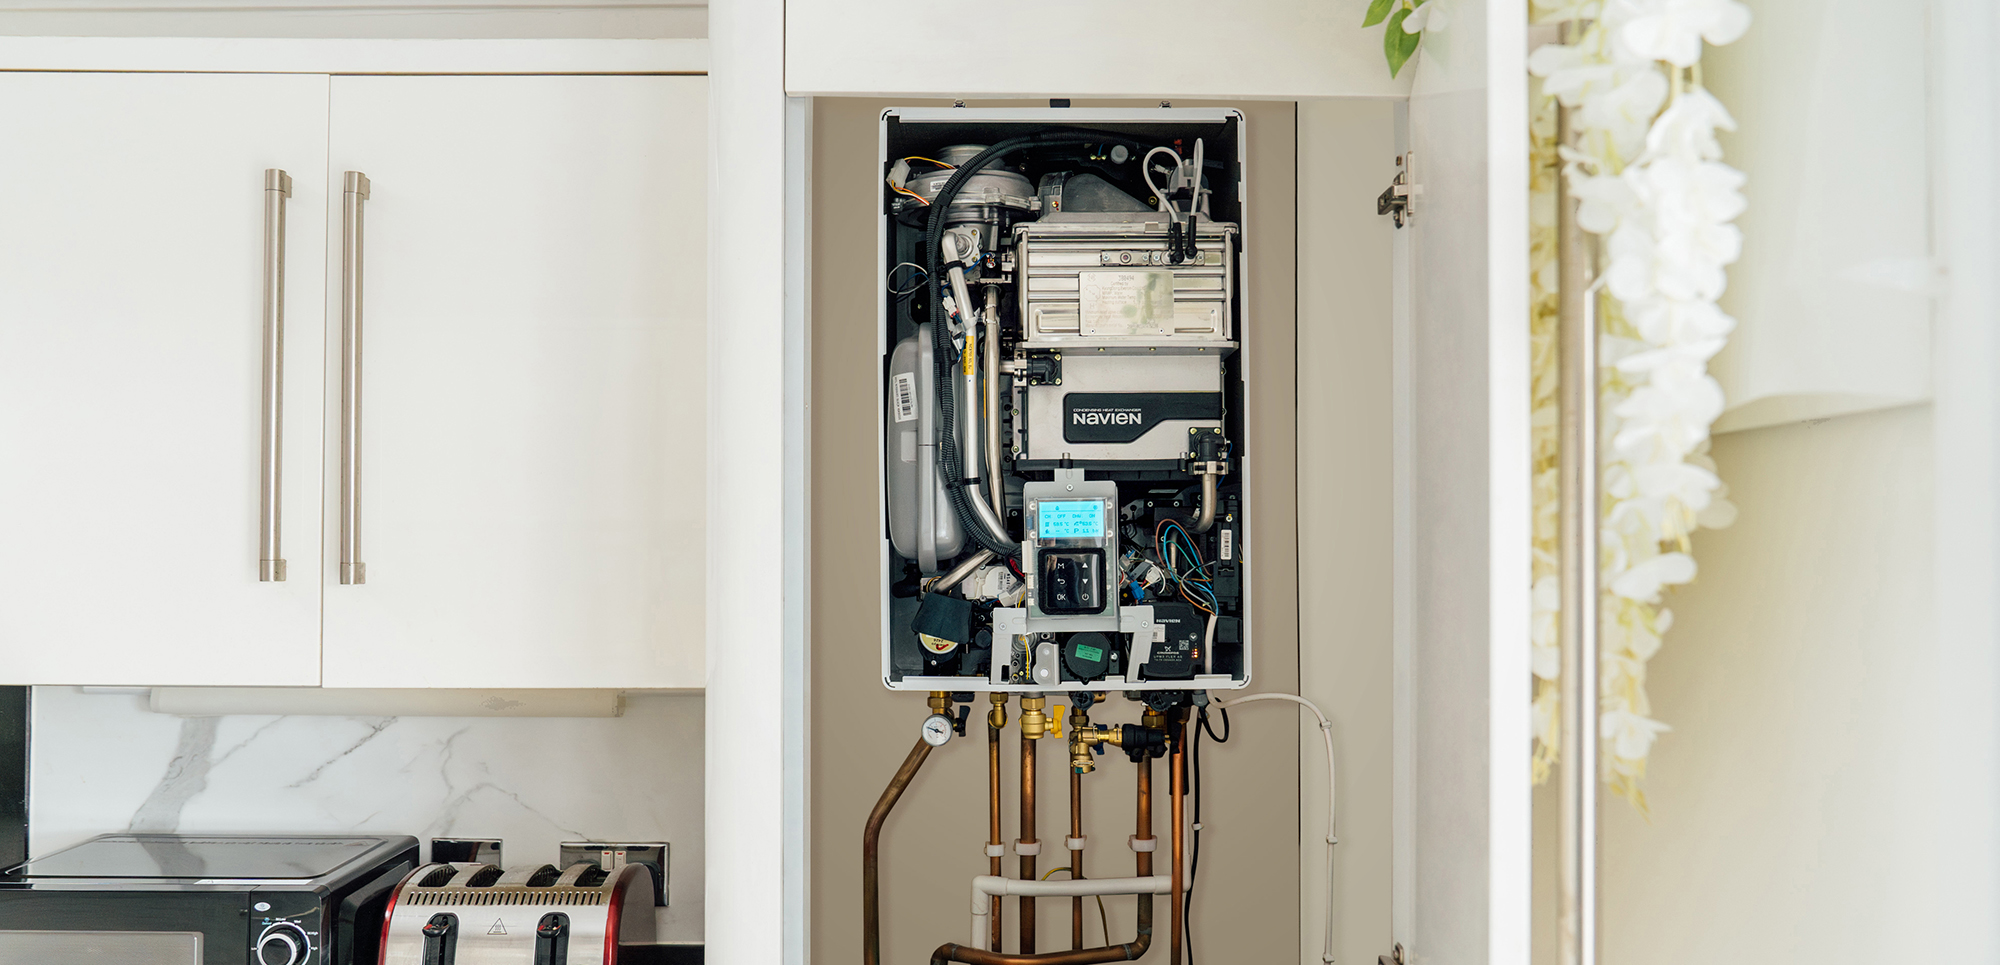 Navien boiler in a kitchen cupboard